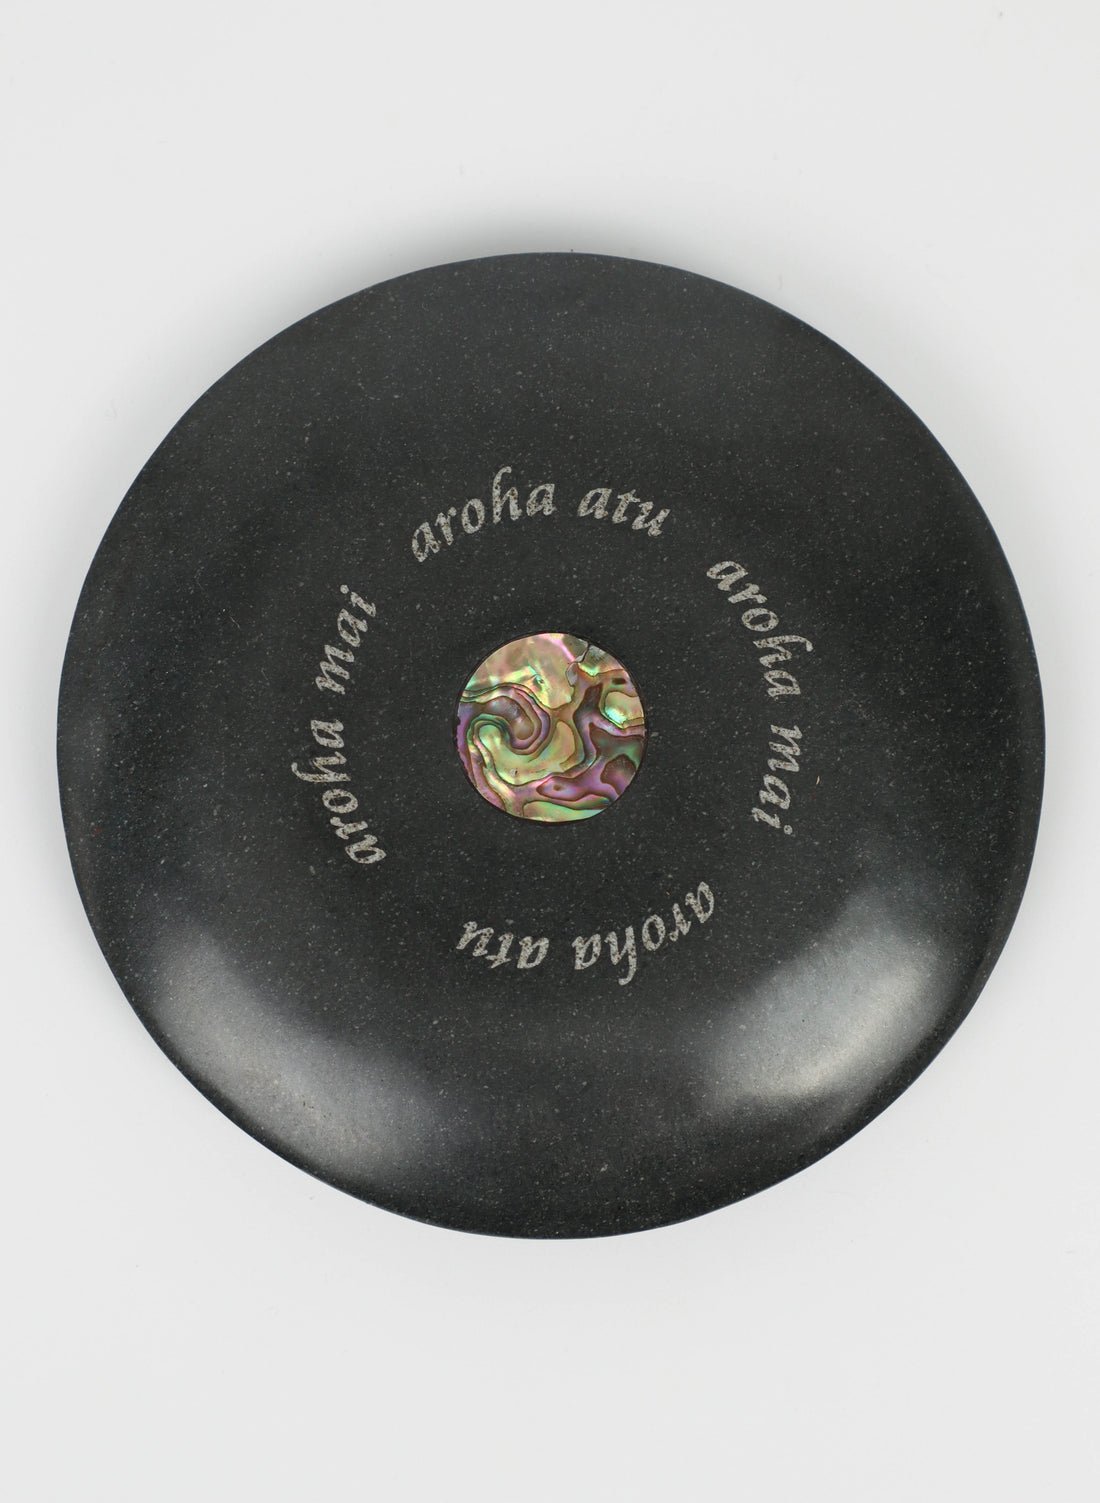 Large Aroha Mai Aroha Atu Disc (Light engraving)